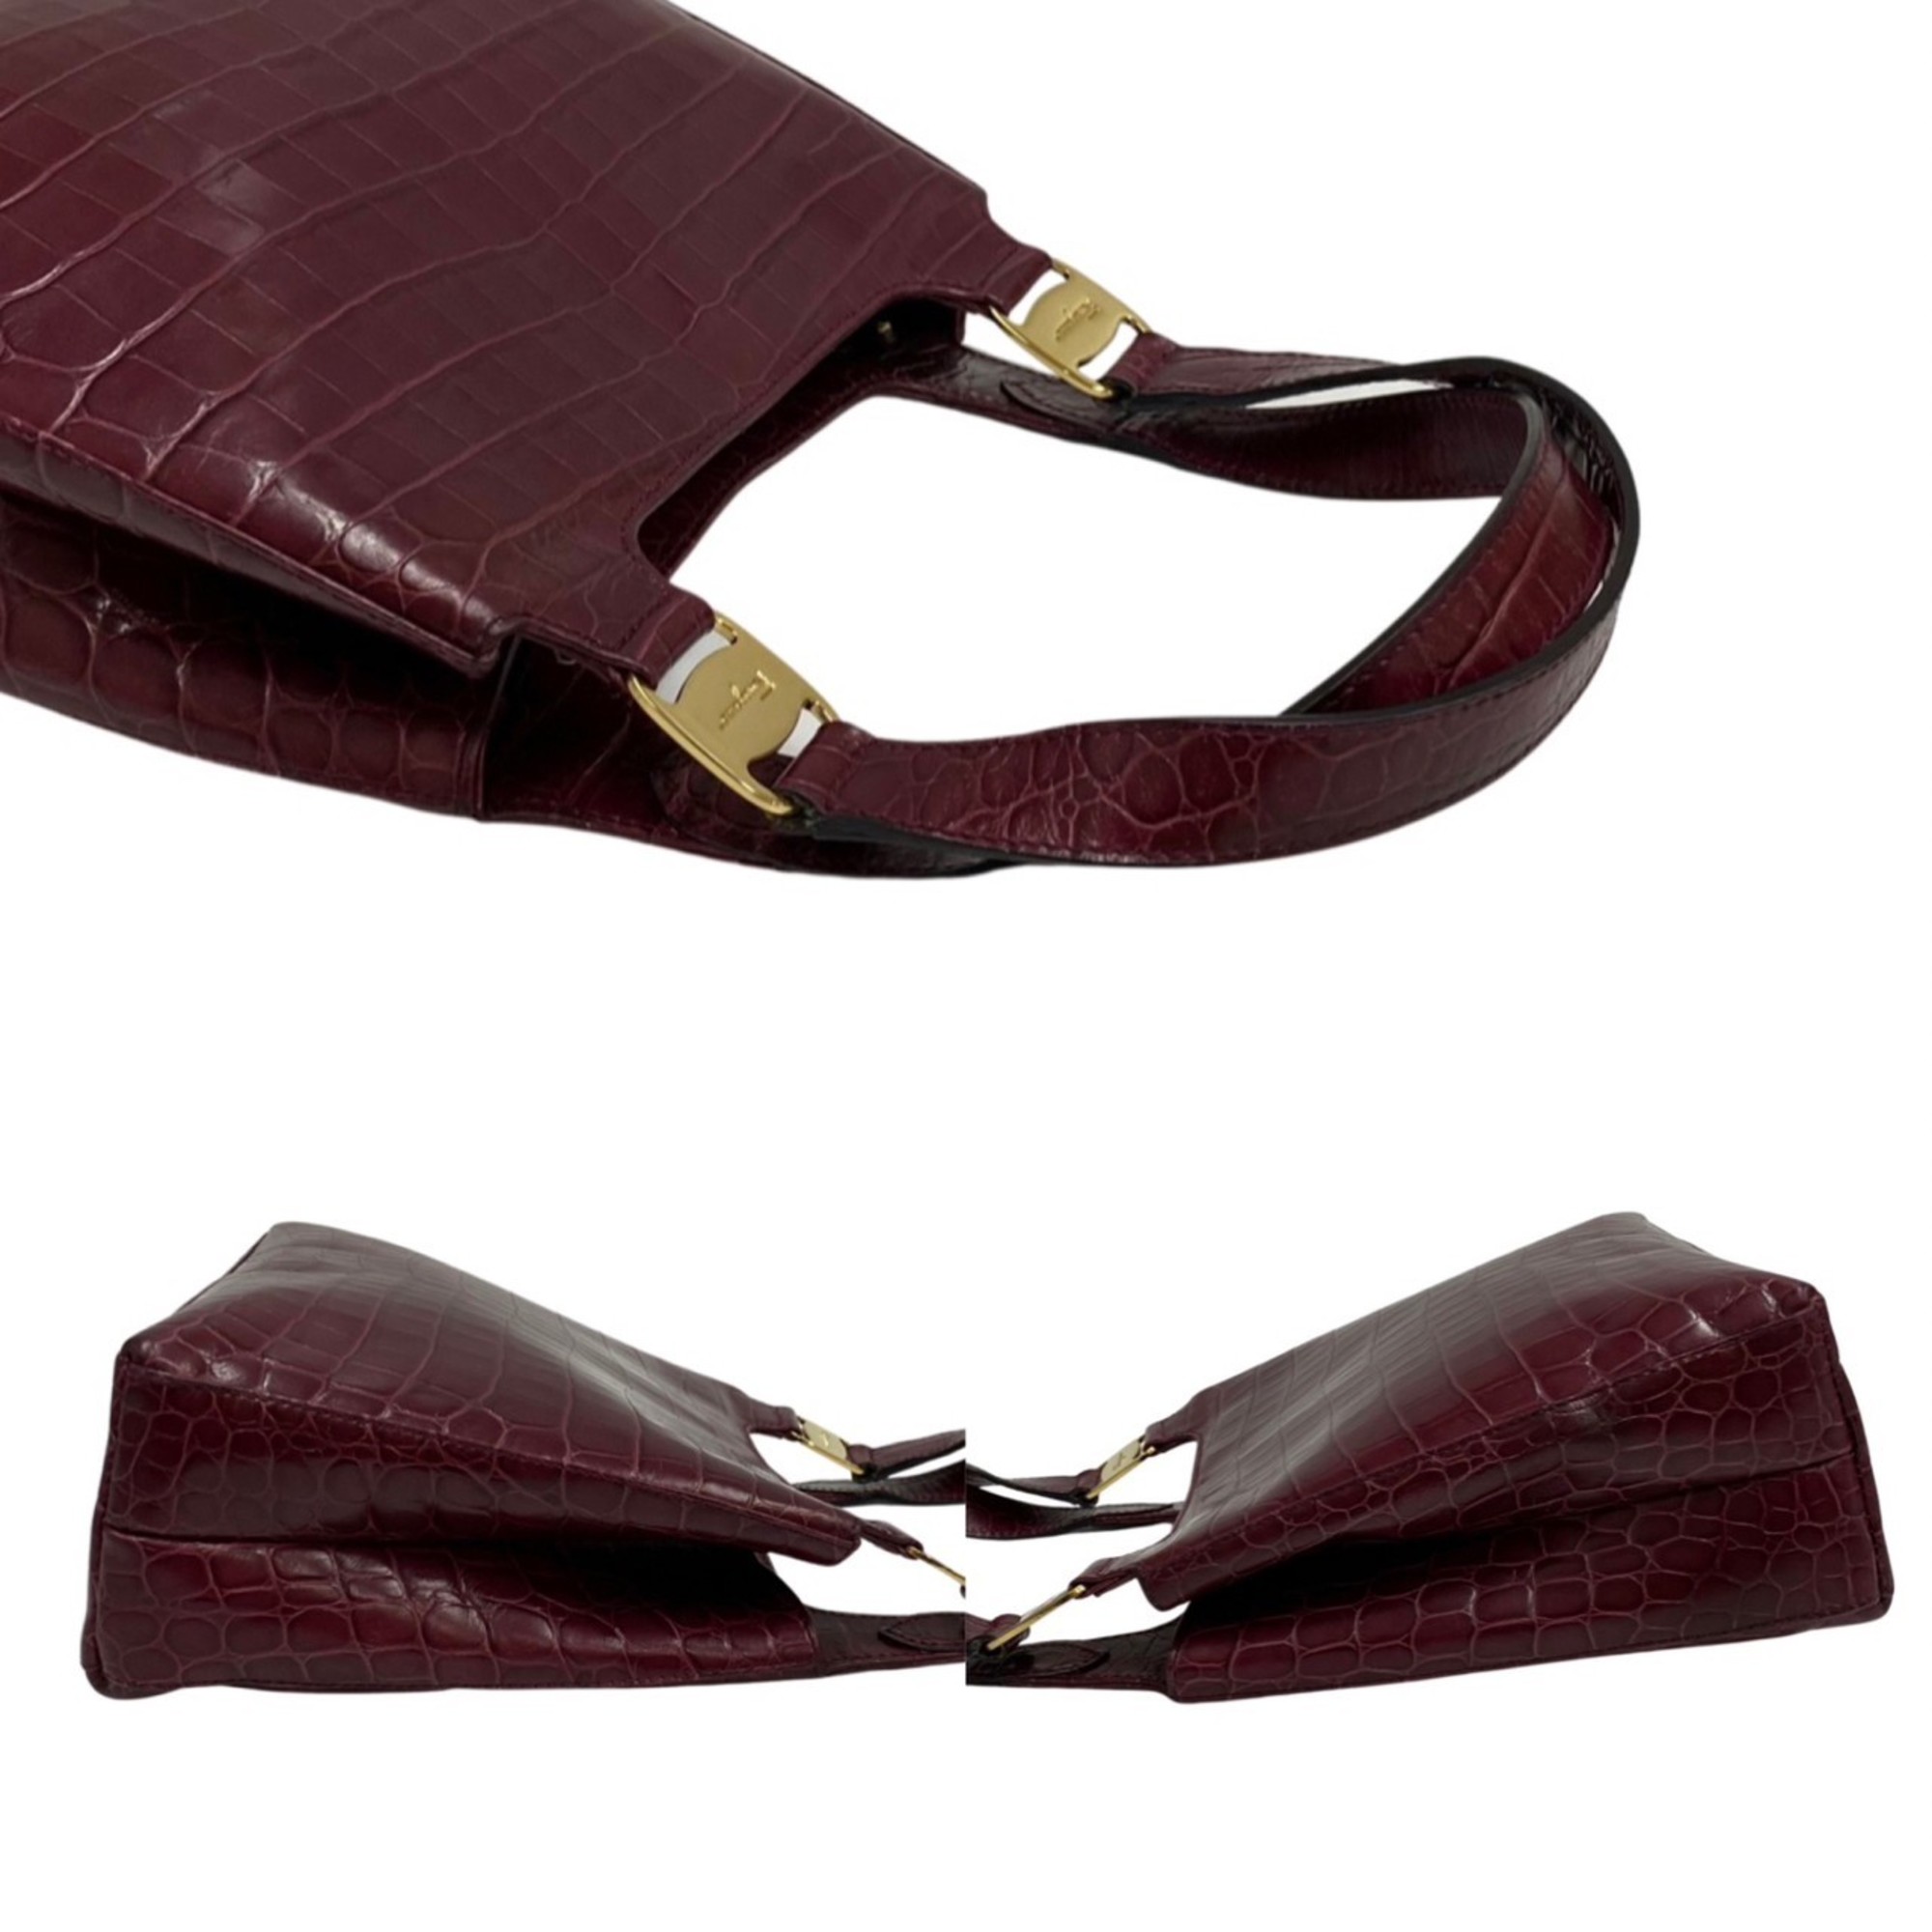 Salvatore Ferragamo Logo Rose Hardware Leather 2way Handbag Shoulder Bag Wine Red